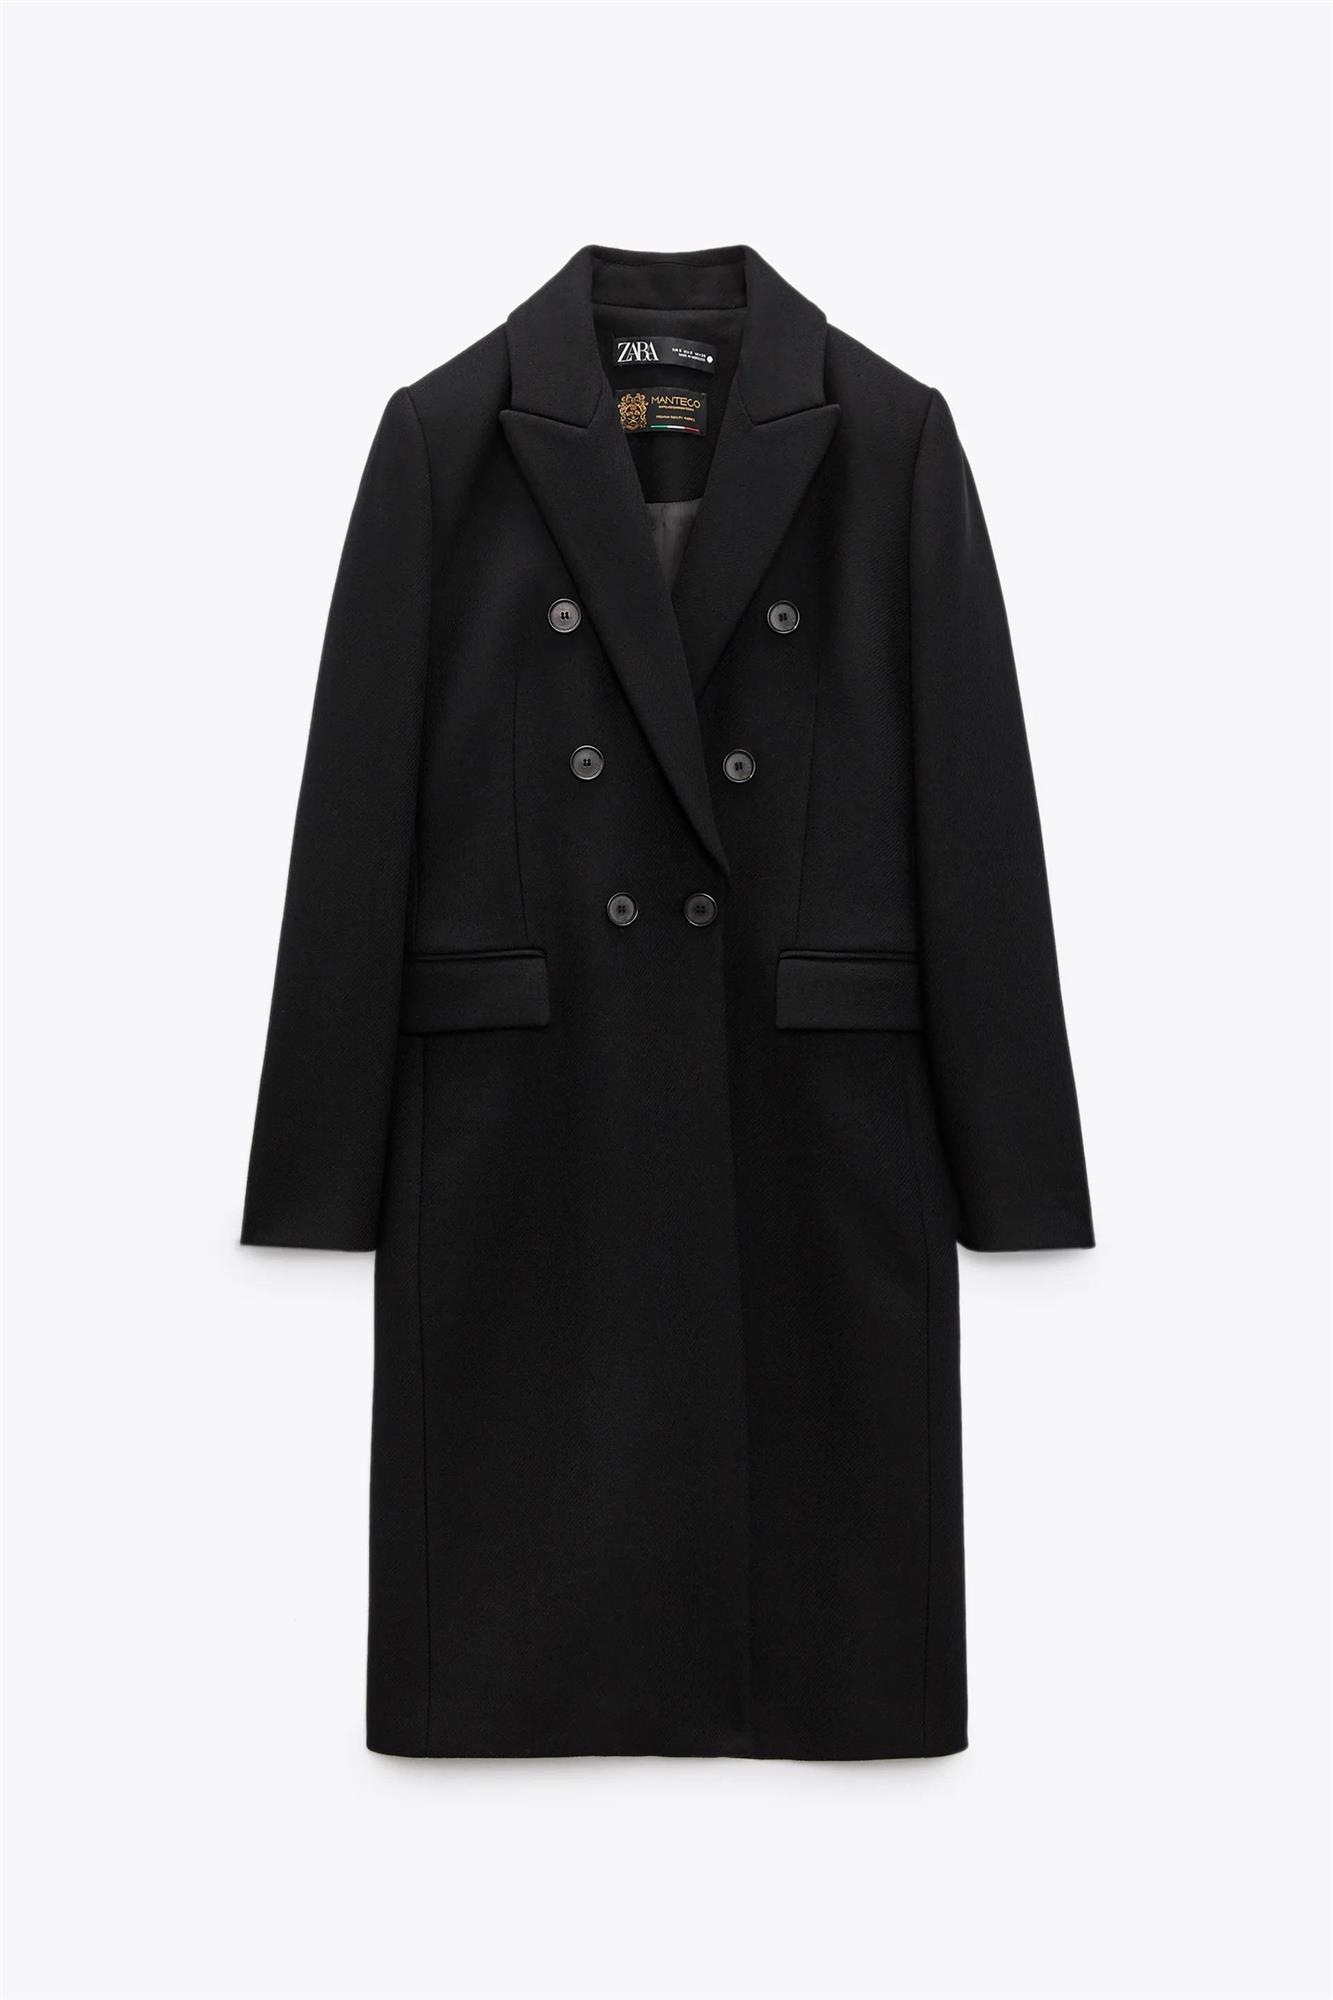 Abrigo negro entallado de Zara